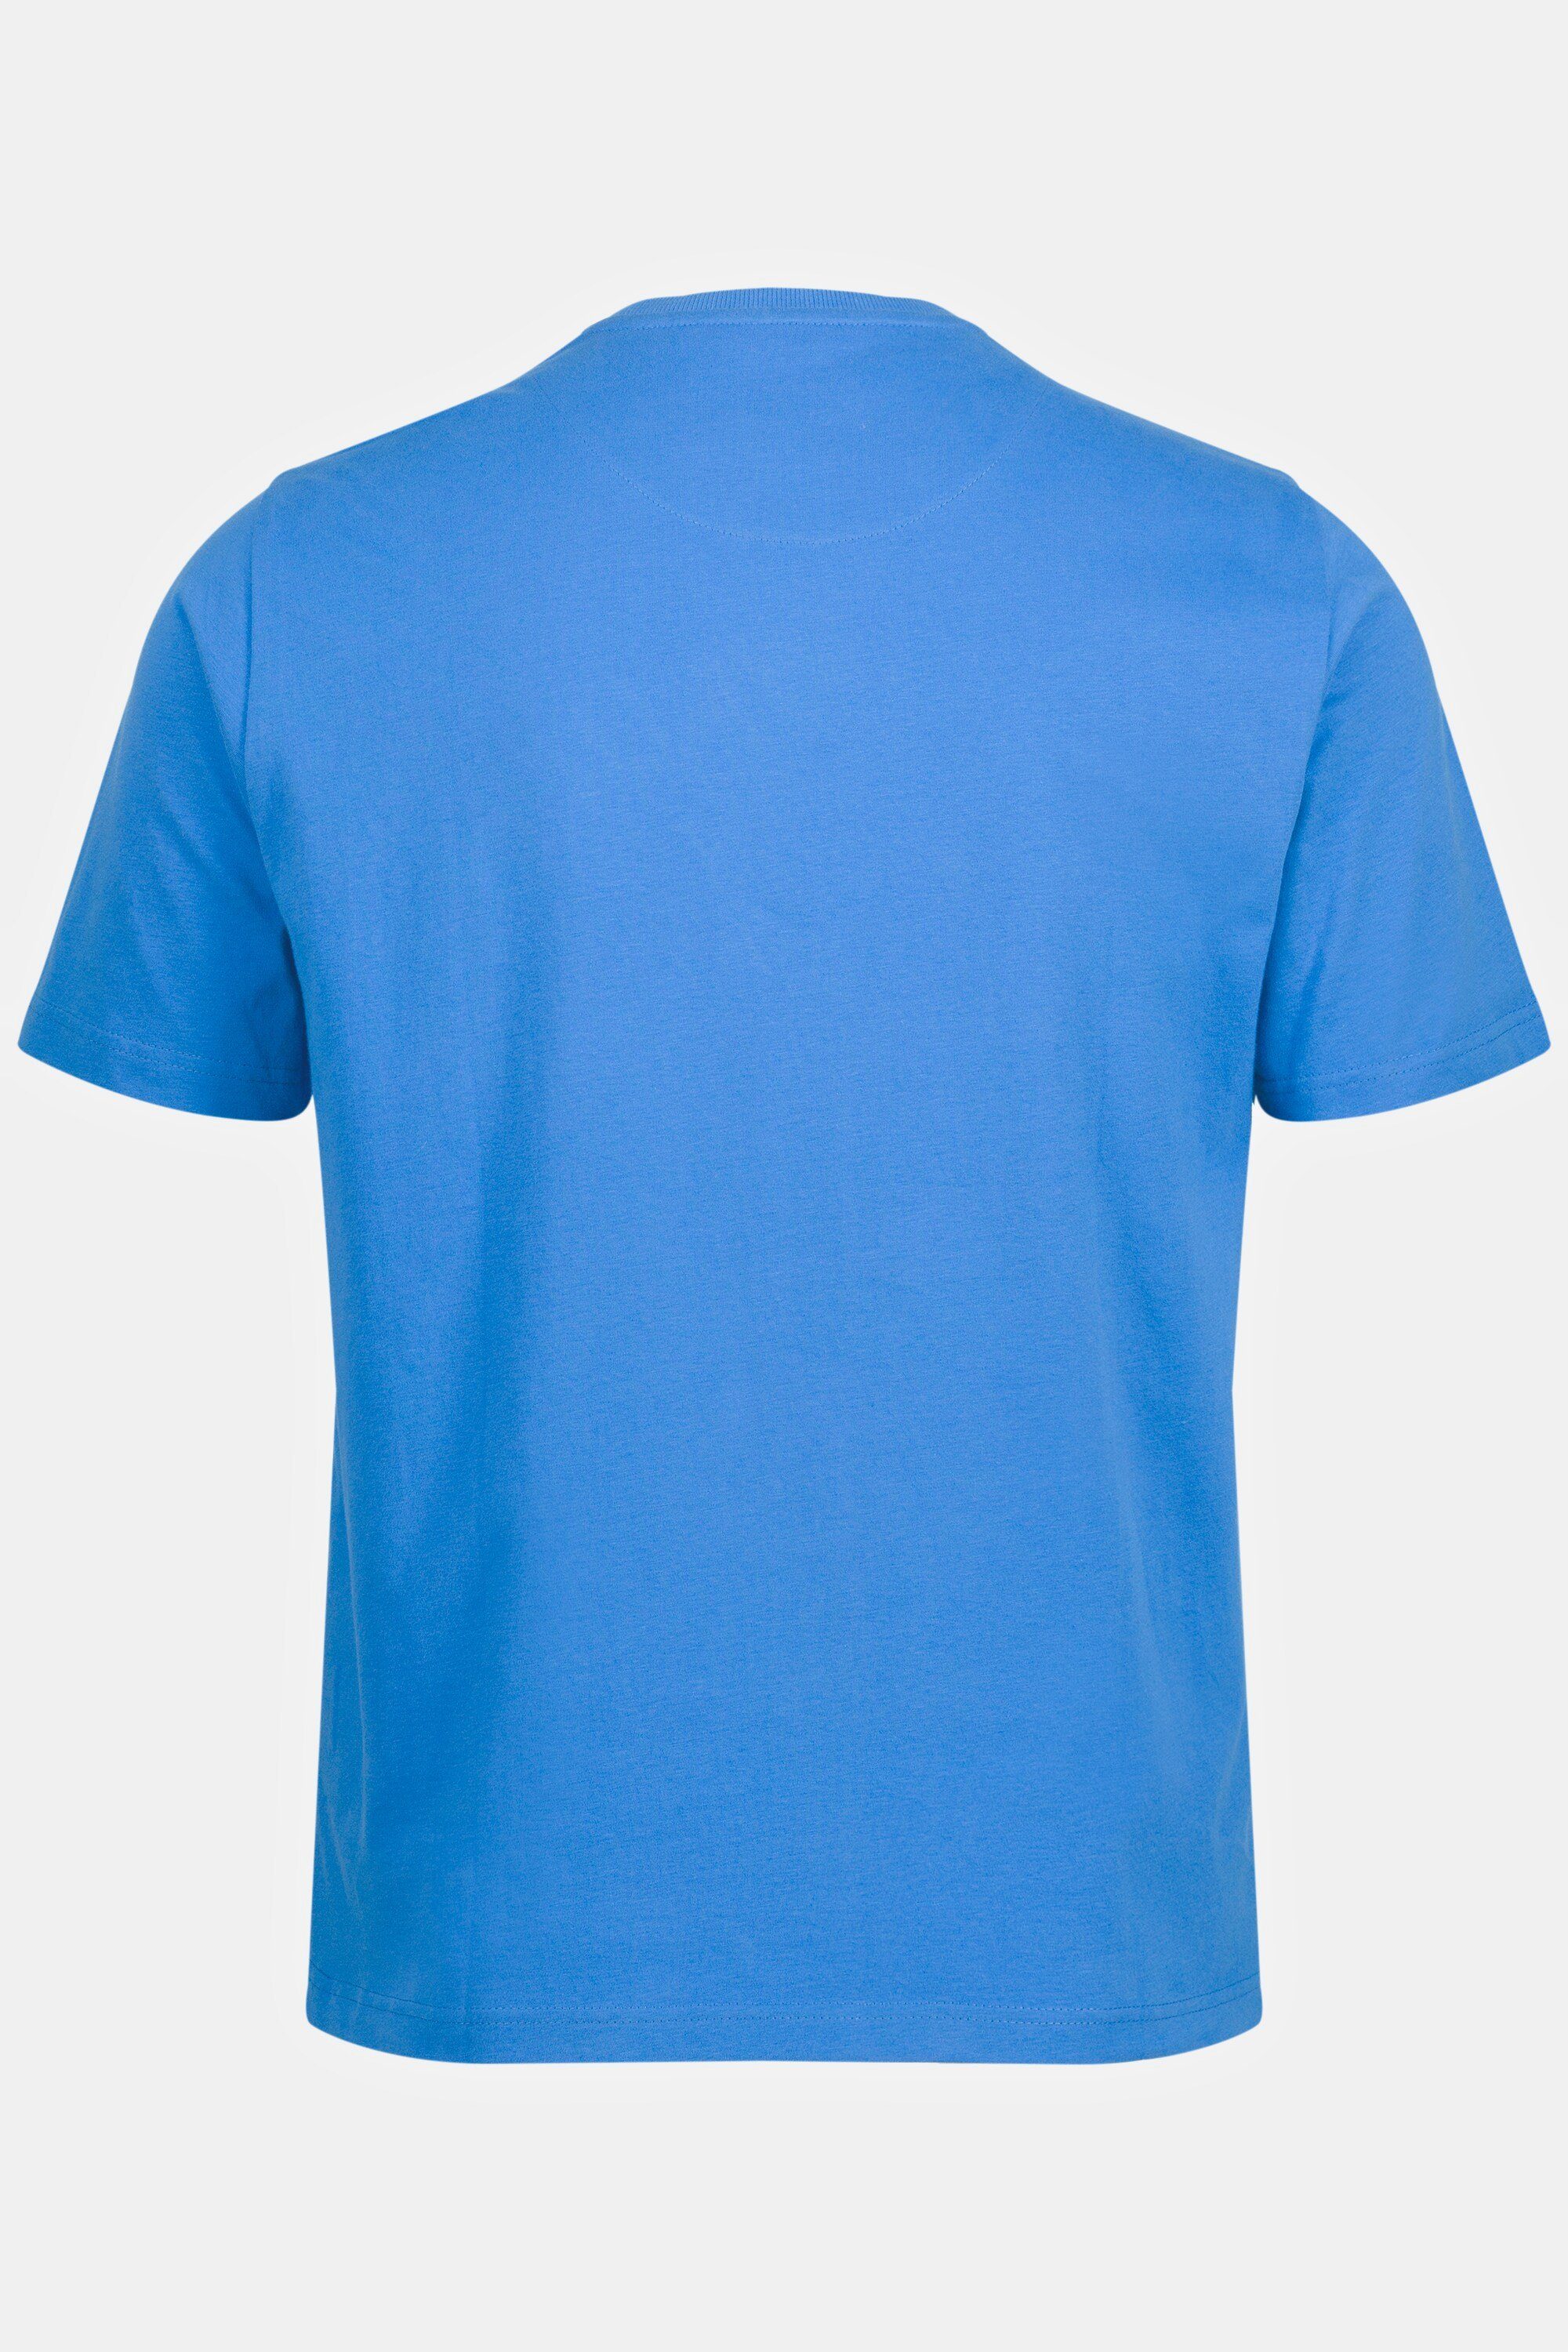 JP1880 T-Shirt Rundhals Stickerei Halbarm T-Shirt blau